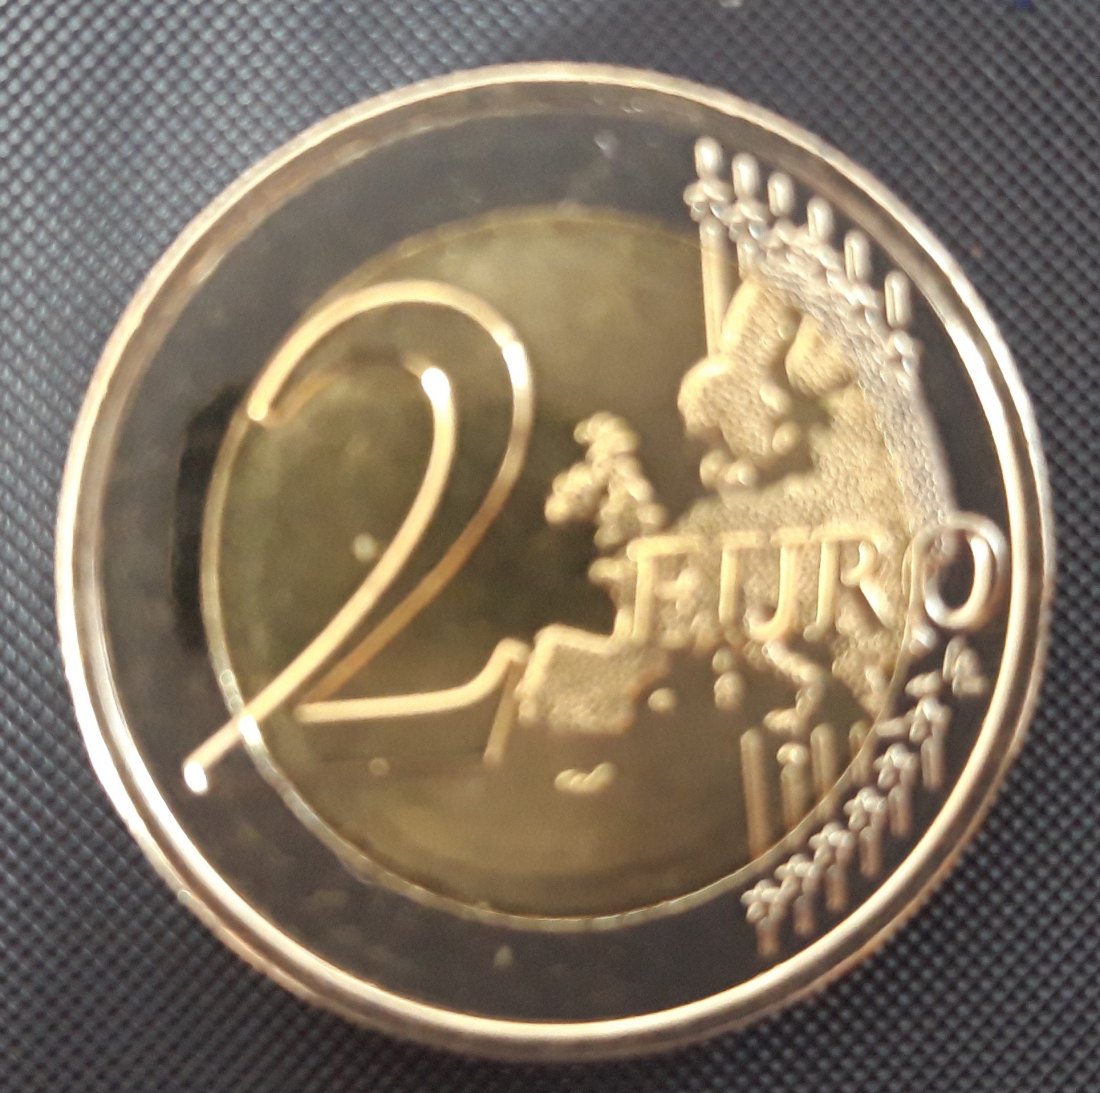  Frankreich - 2 Euro Münze 2019 - Normale Umlaufmünze - unc.   